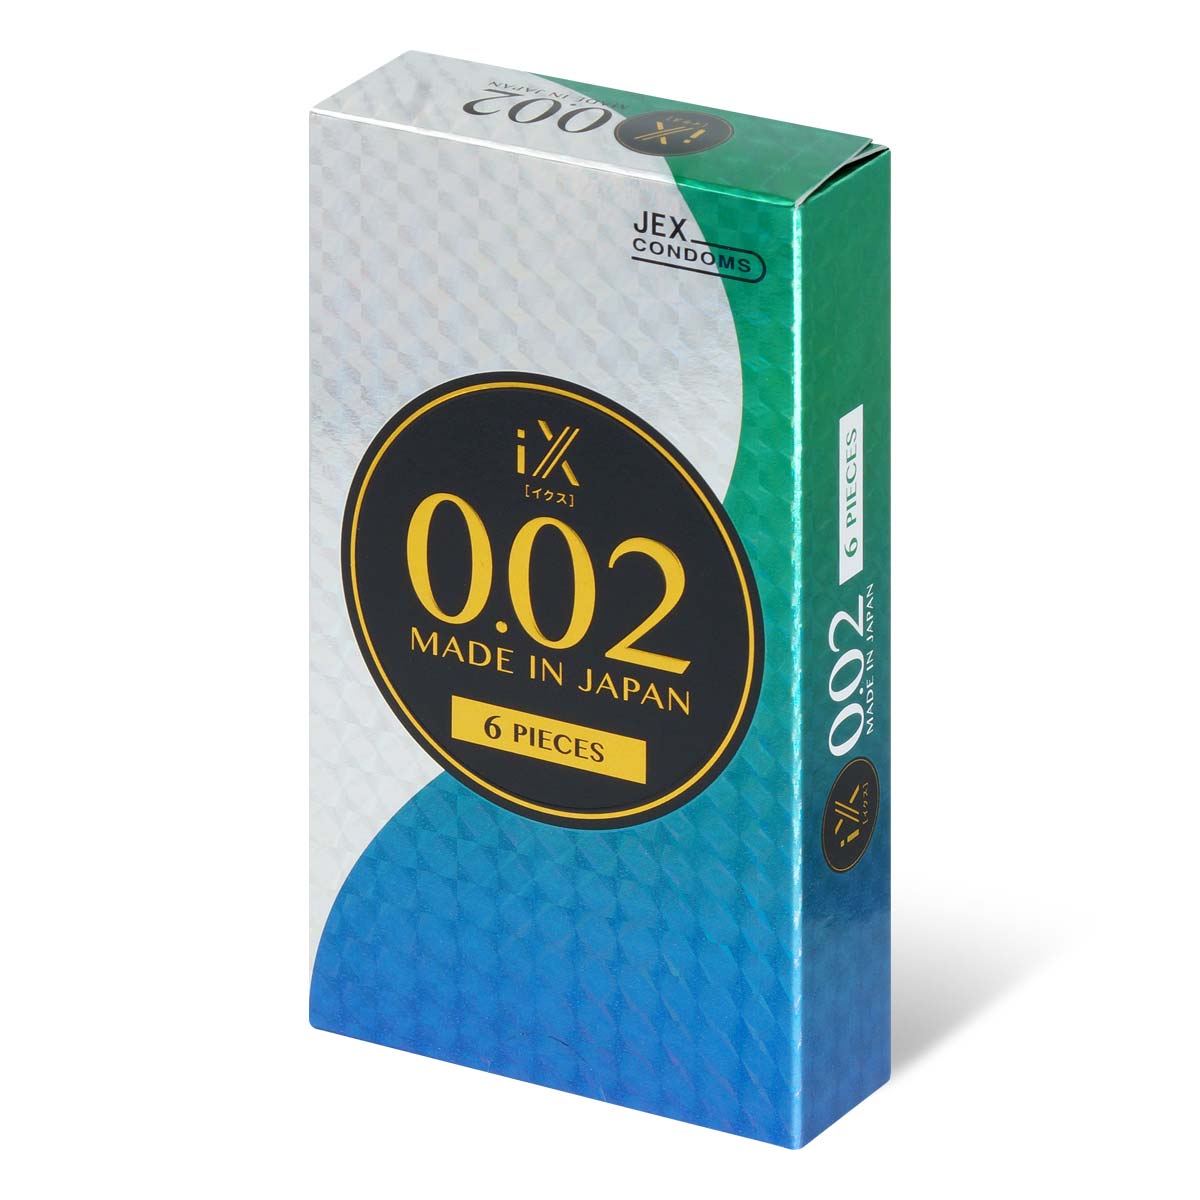 JEX iX 0.02 6's Pack PU Condom-thumb_1